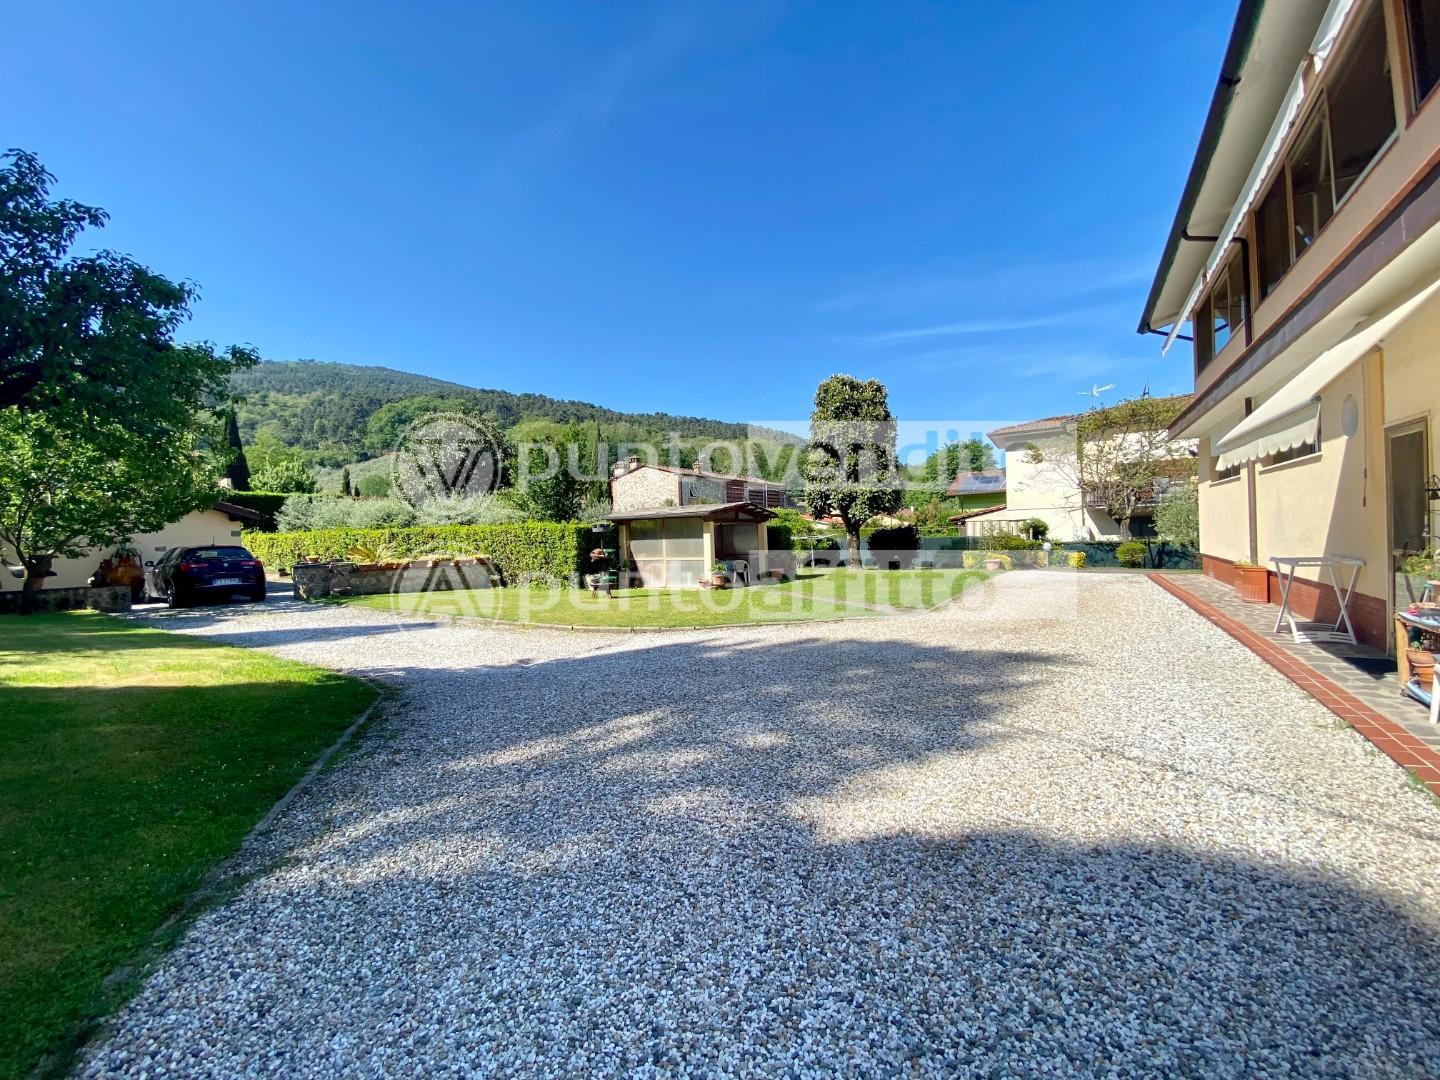 Villa Bifamiliare in vendita a Capannori, 7 locali, prezzo € 370.000 | PortaleAgenzieImmobiliari.it